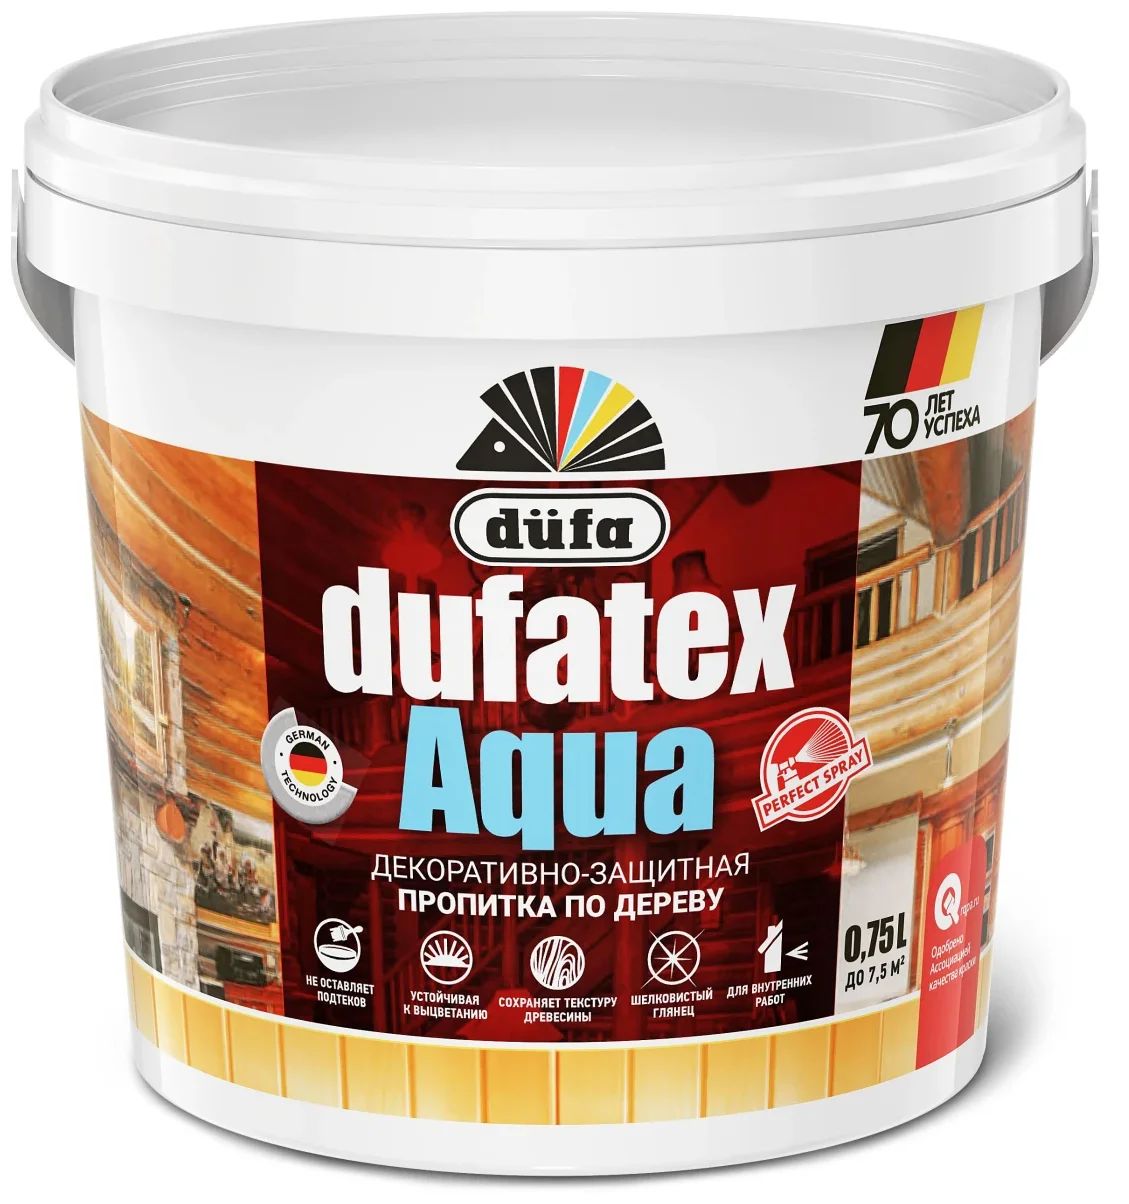 фото Пропитка для древесины dufa dufatex-aqua бесцветная, 750 мл